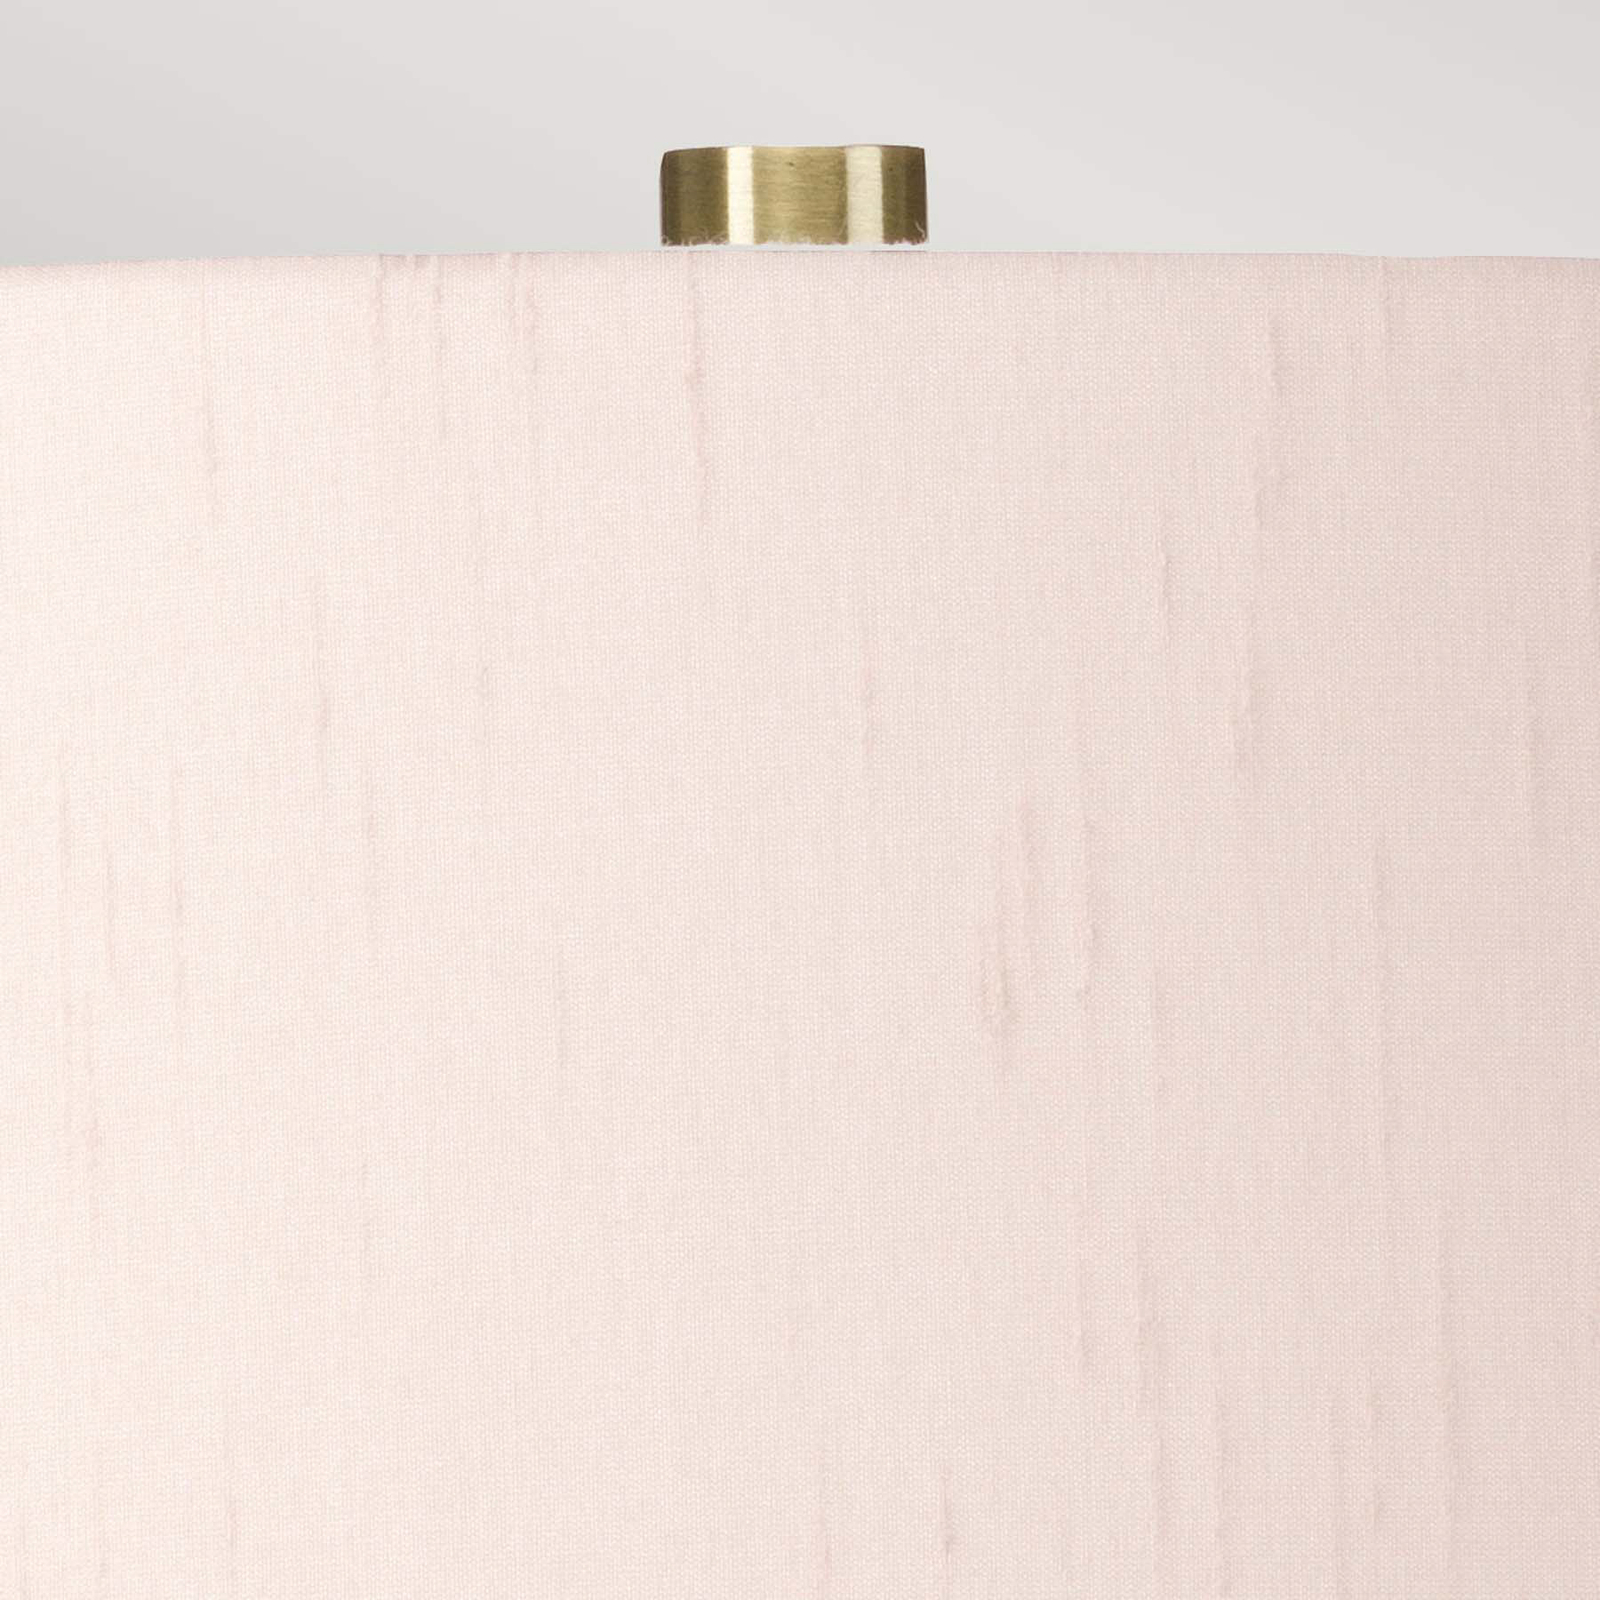 Isla tekstilinė stalinė lempa žalvaris antikvarinis/rožinis